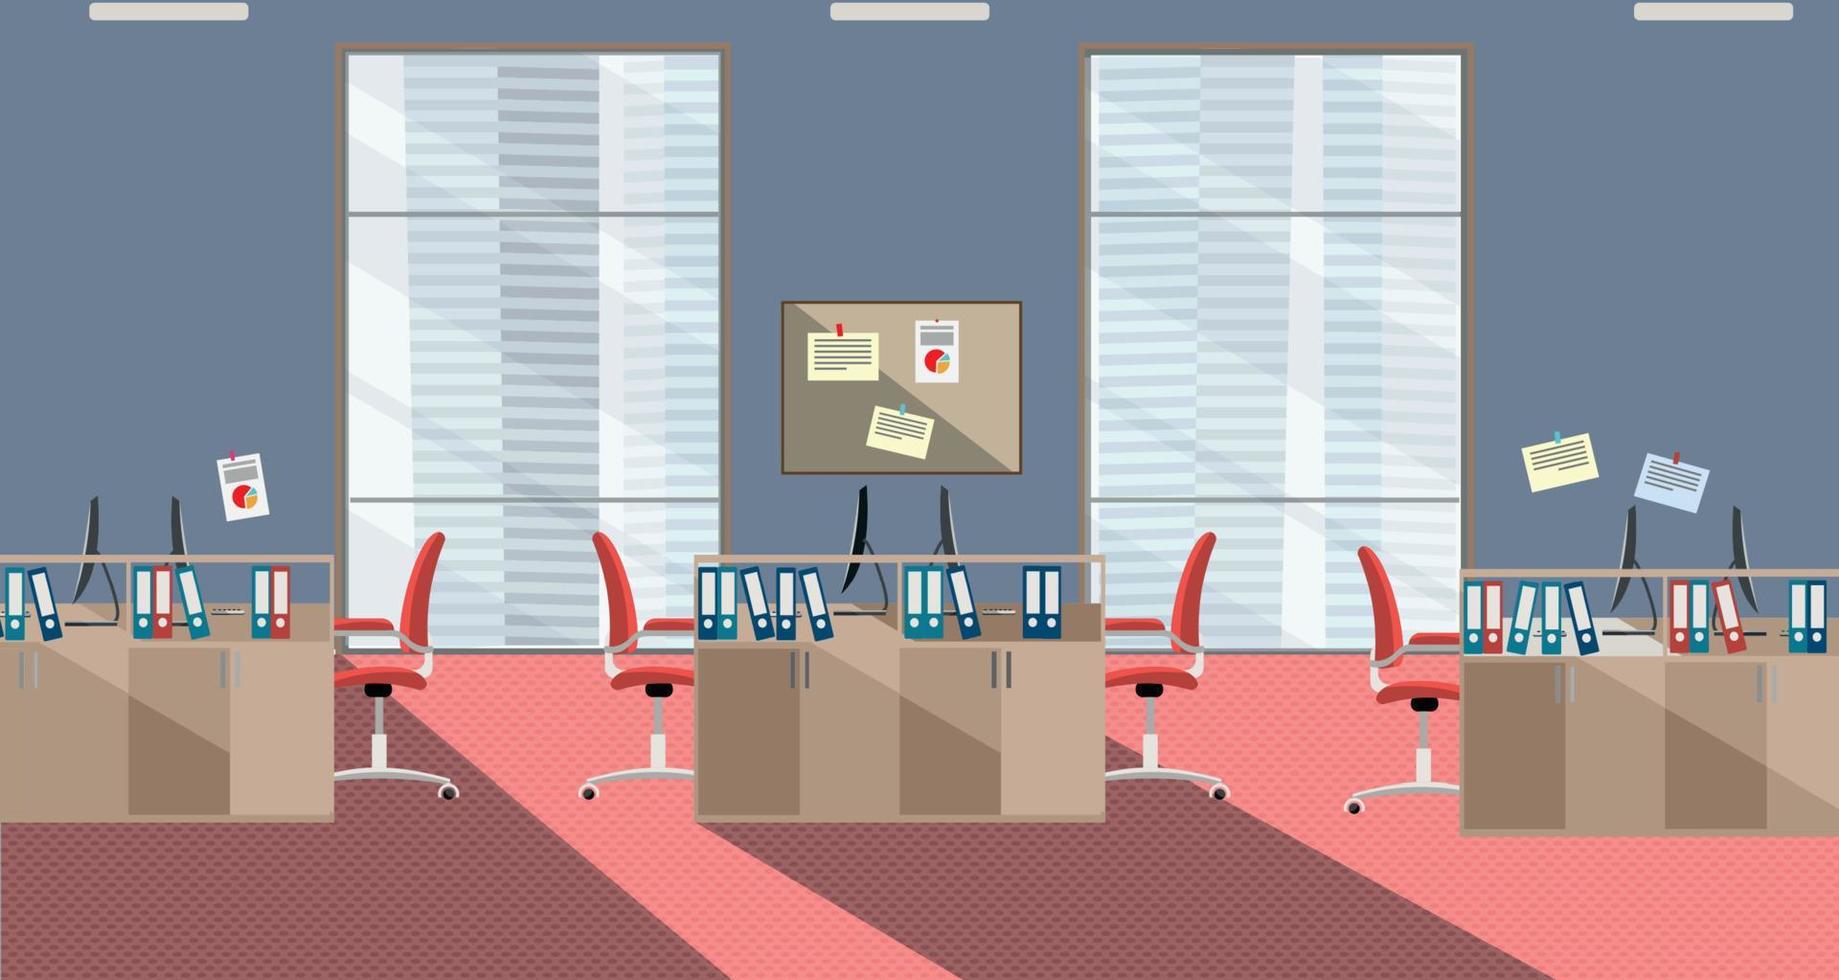 platt illustration av modern kontor interiör med stor fönster i skyskrapa med möbel och datorer i röd och grå färger. öppen Plats för 6 människor. beställa på bord, mappar, skrot på väggar vektor